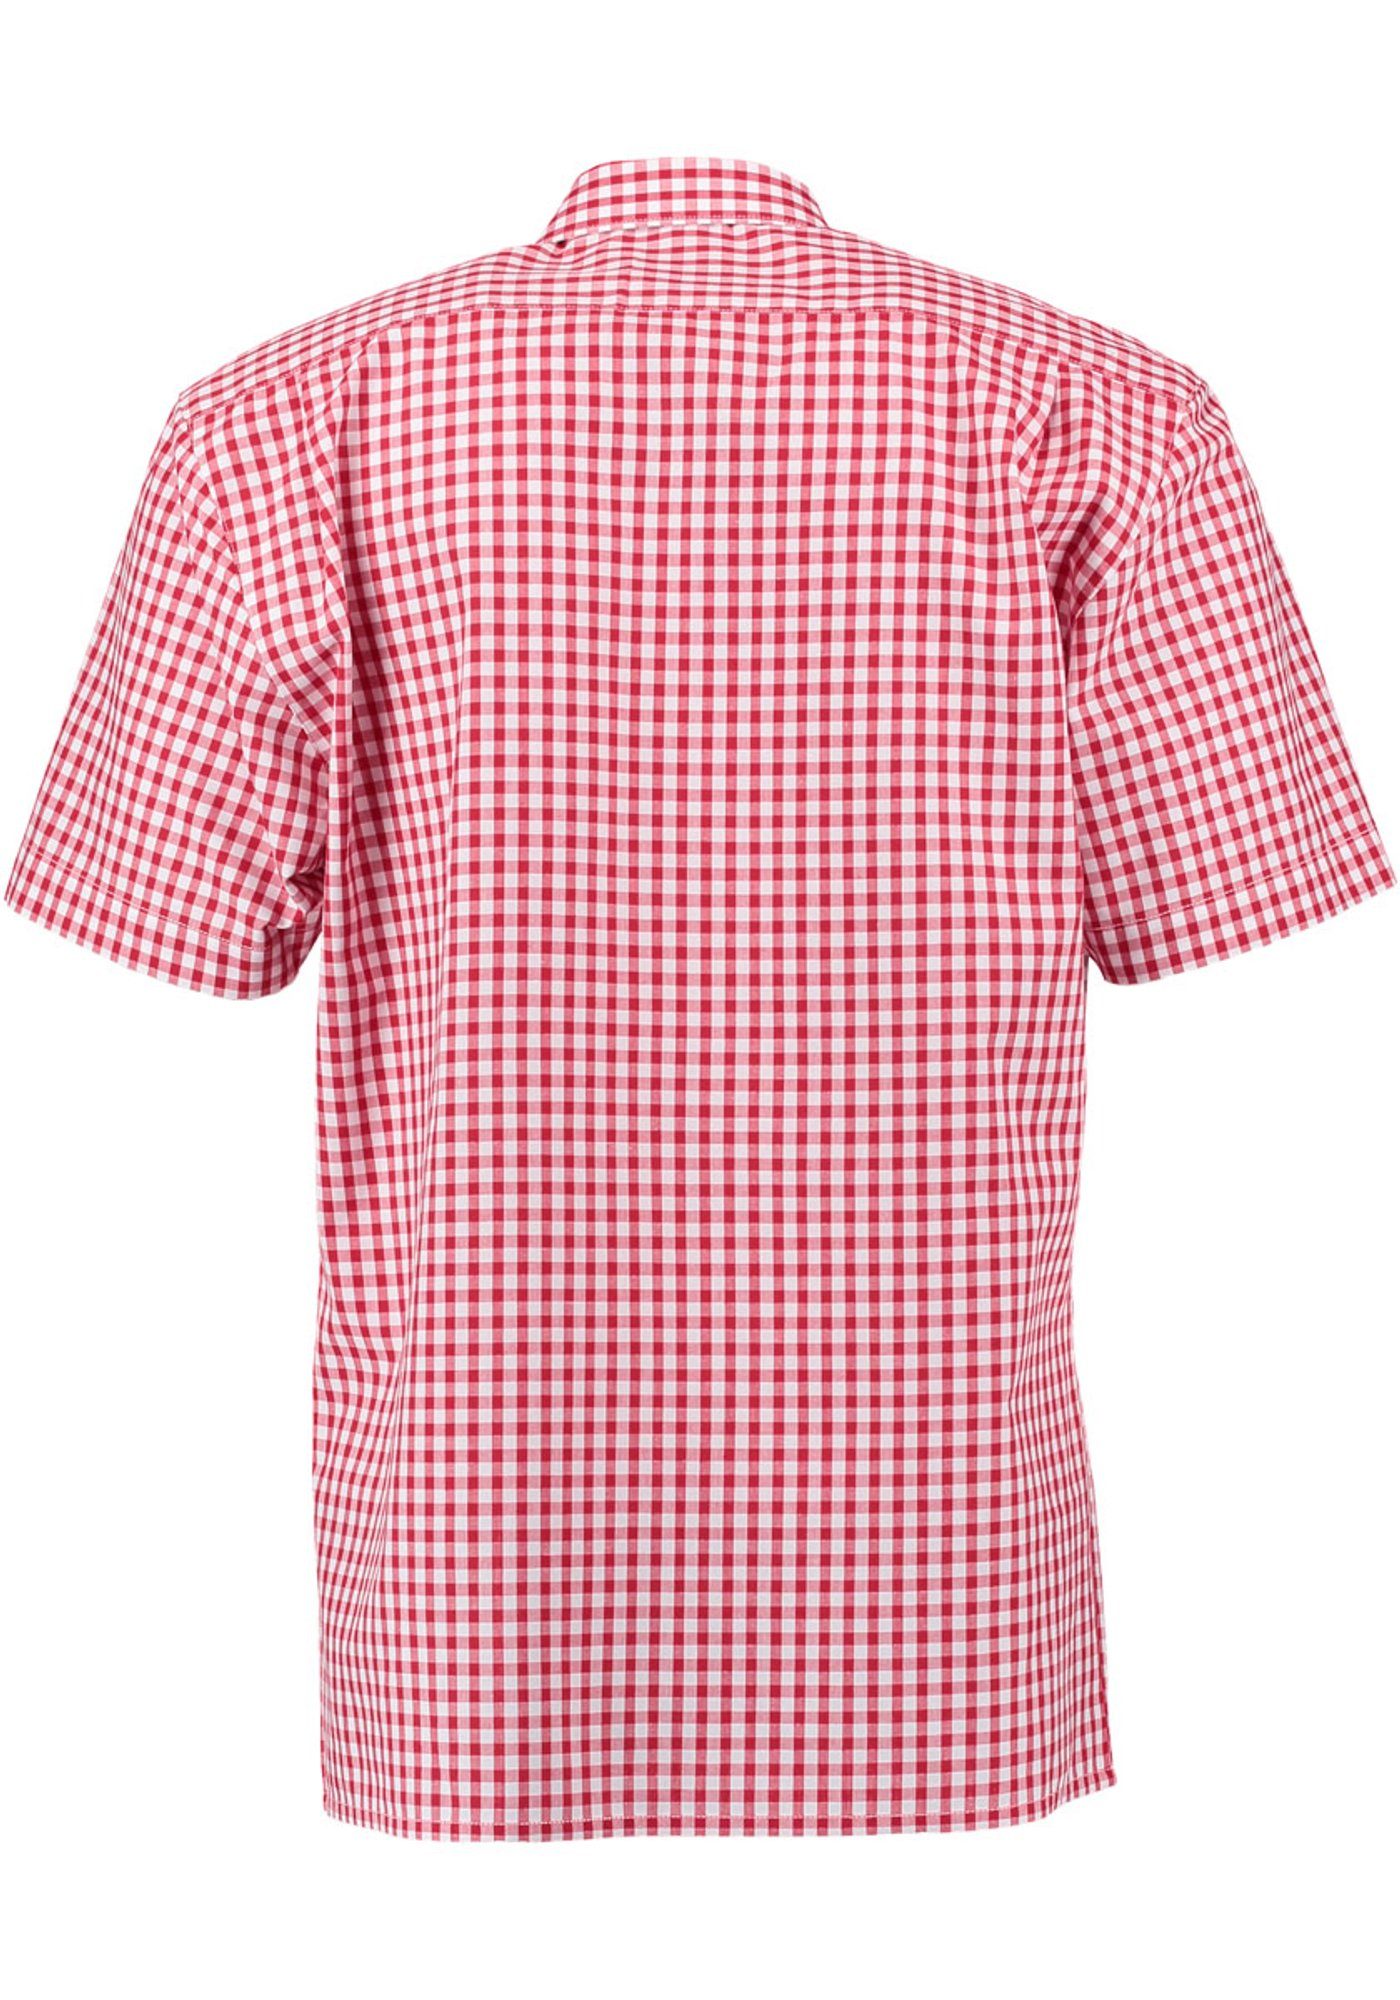 Hirsch-Stickerei mittelrot Zihul mit mit Kurzarmhemd aufgesetzter Trachtenhemd Brusttasche OS-Trachten